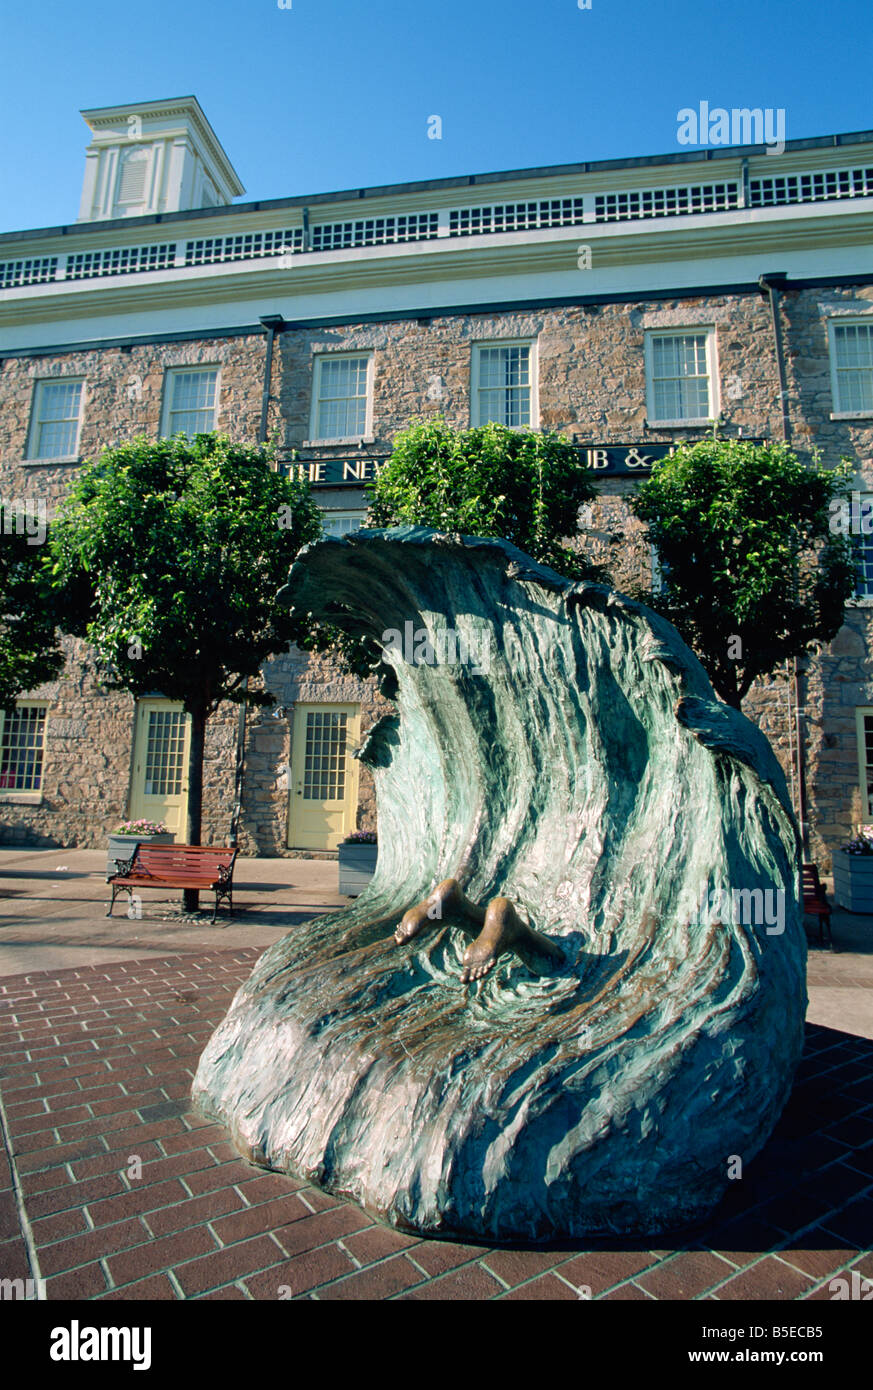 Sculpture représentant une personne plongée dans une vague, Newport, Rhode Island, New England, USA, Amérique du Nord Banque D'Images